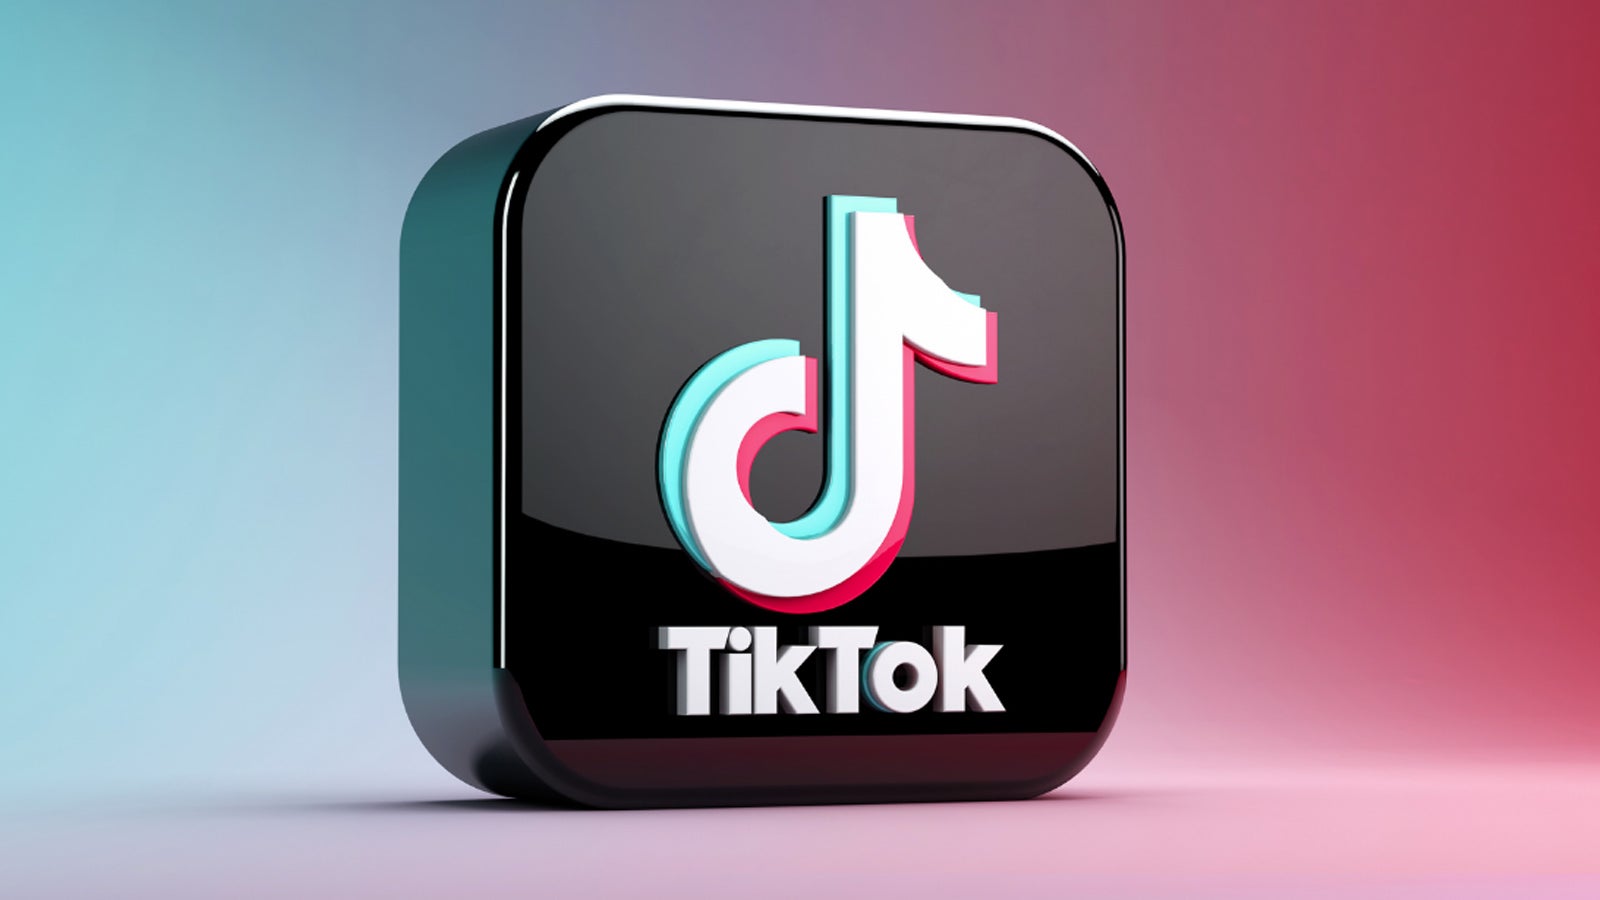 TikTok の「偽の」モバイルゲーム広告はどうなっているのですか?